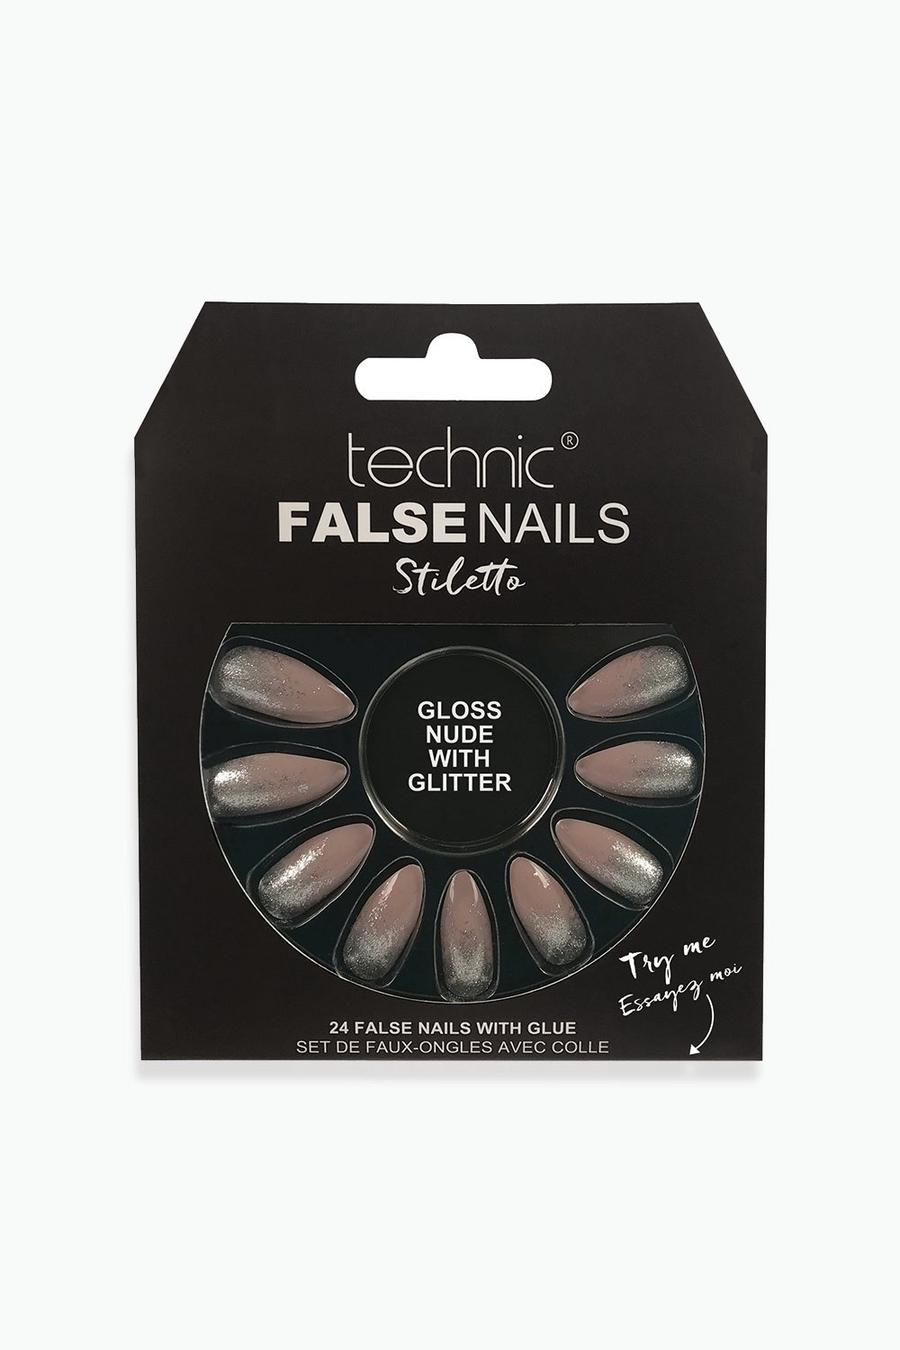 Technic - Unghie finte Stiletto Gloss Nude glitterate